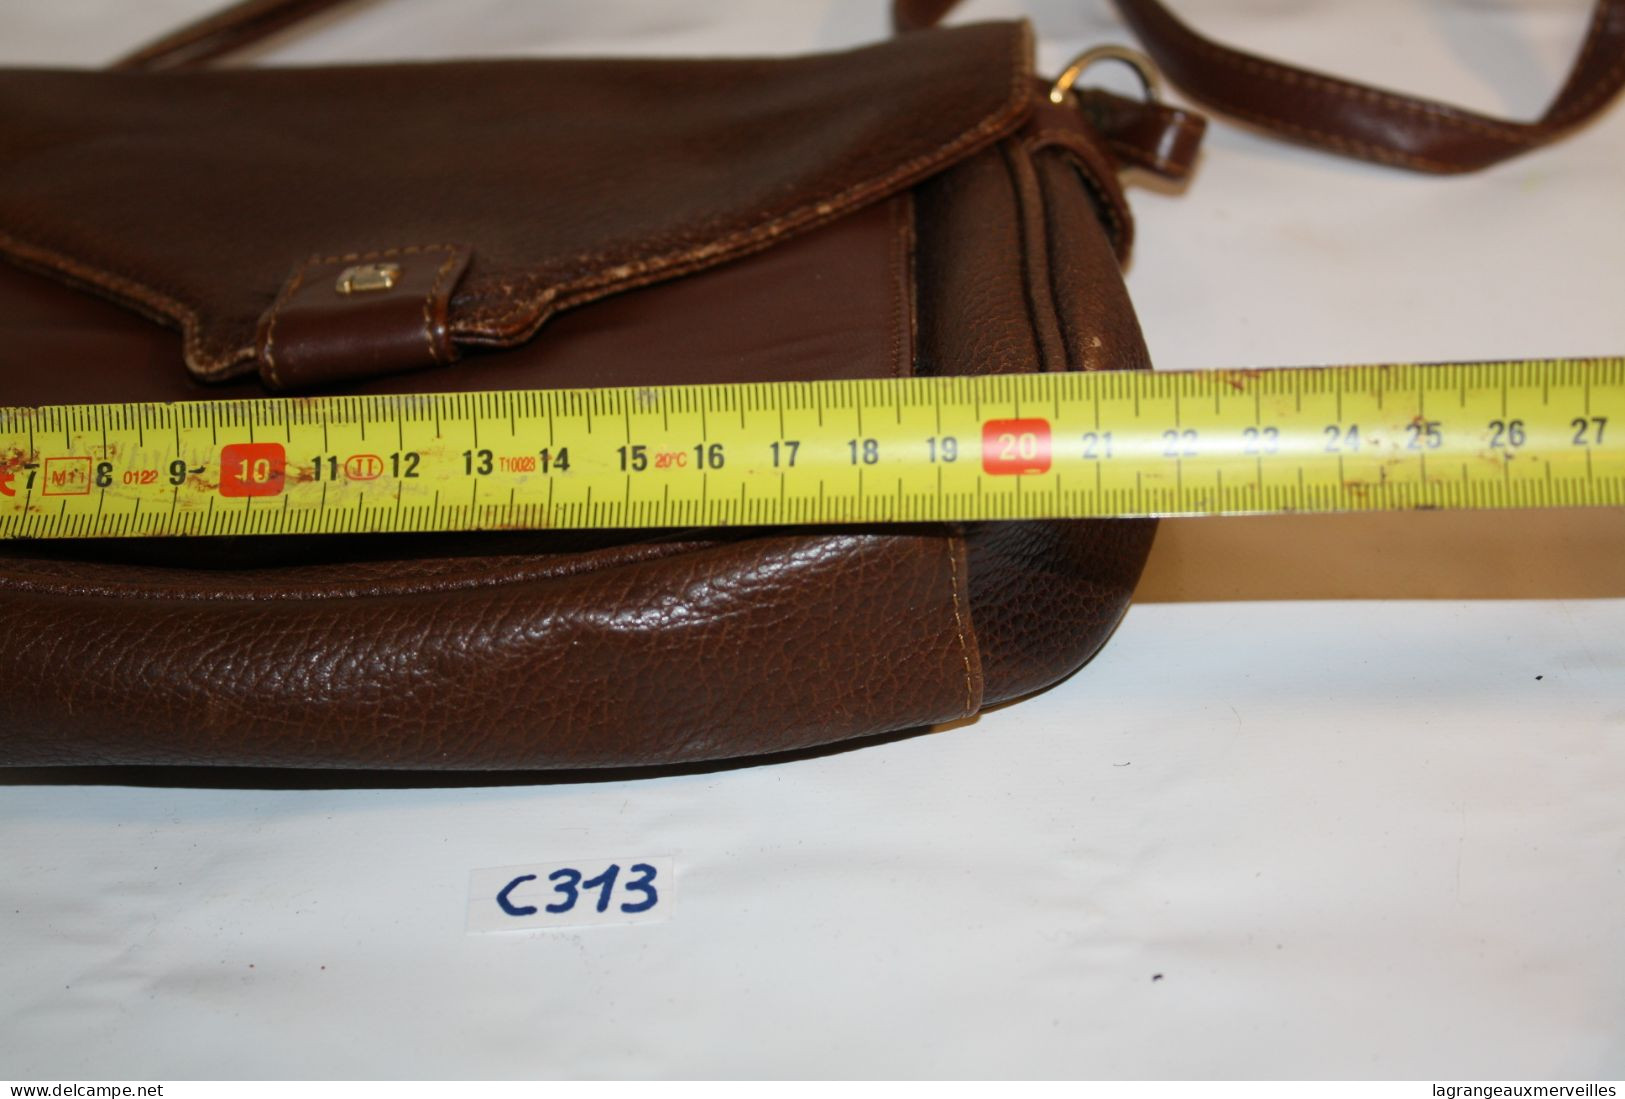 C313 Ancien sac en cuir pour dame - vintage - brun